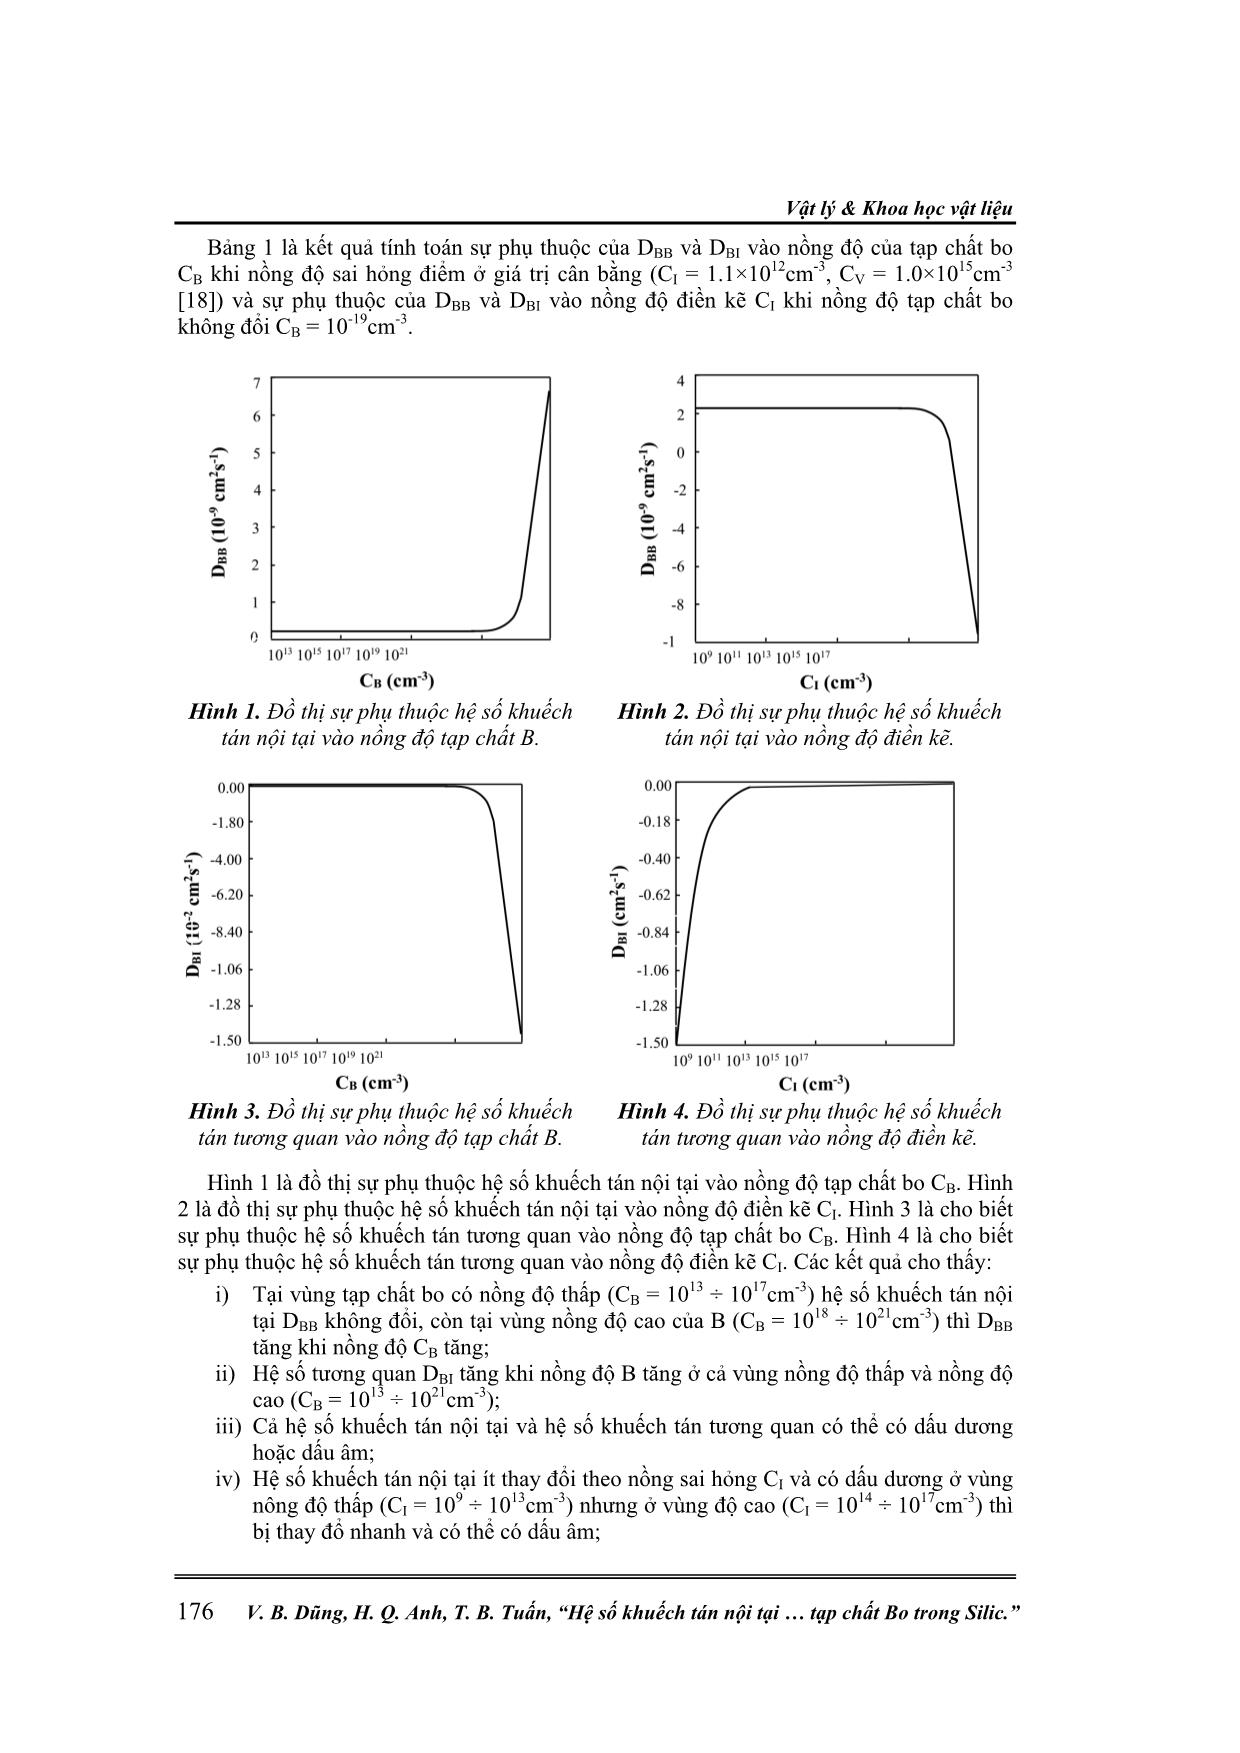 Hệ số khuếch tán nội tại và hệ số khuếch tán tương quan của tạp chất bo trong silic trang 4